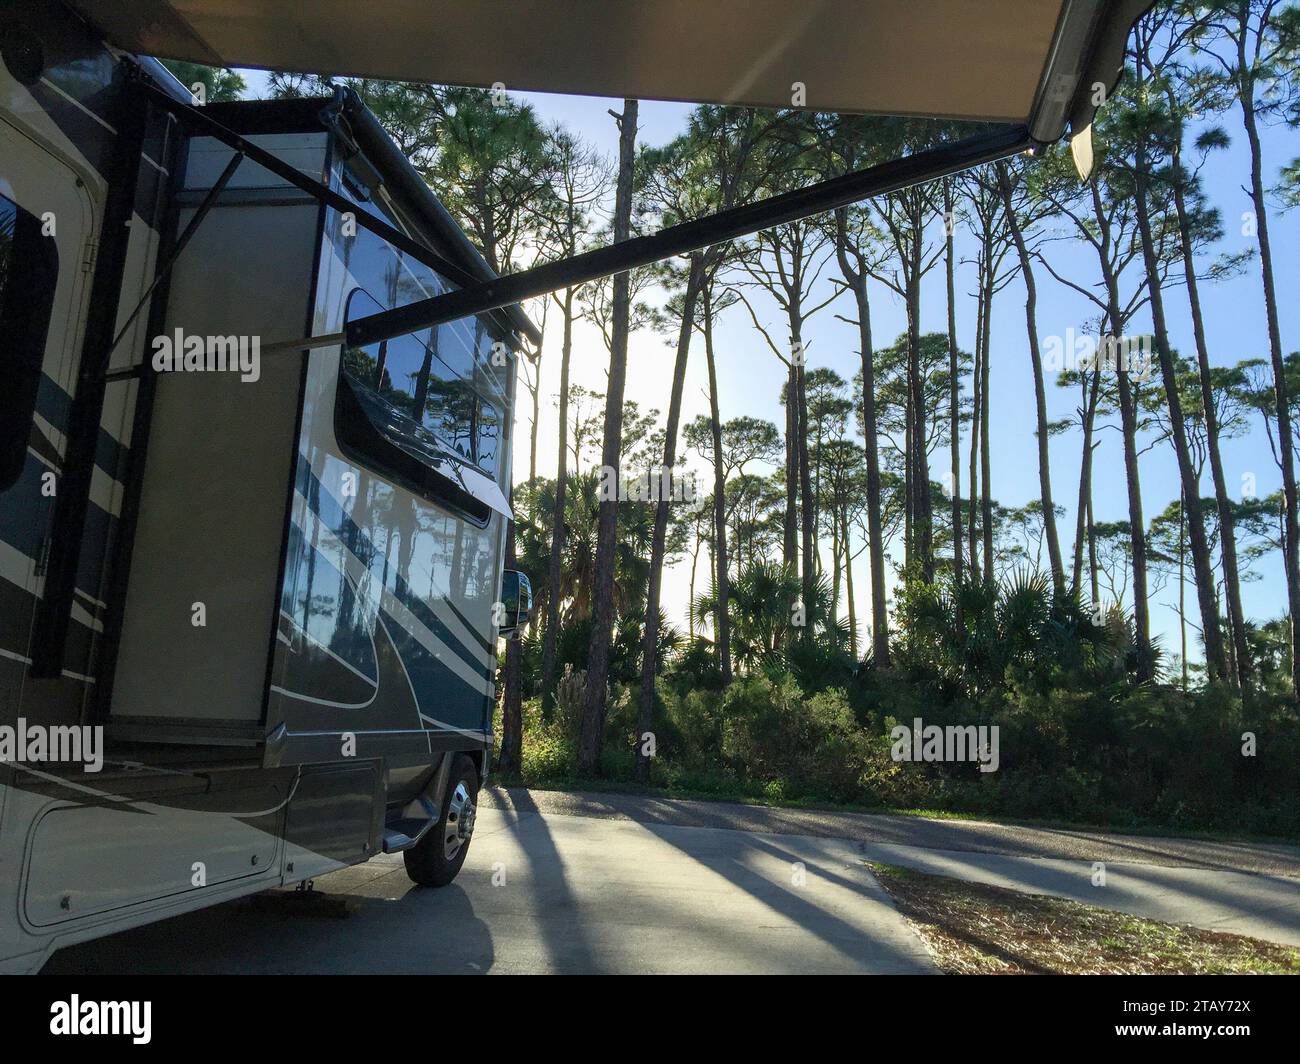 Ein Wohnmobil oder Wohnmobil parkt auf einem ruhigen Campingplatz im T.H Stone Memorial State Park entlang der Gegend, die als Florida Panhandle bekannt ist. Stockfoto